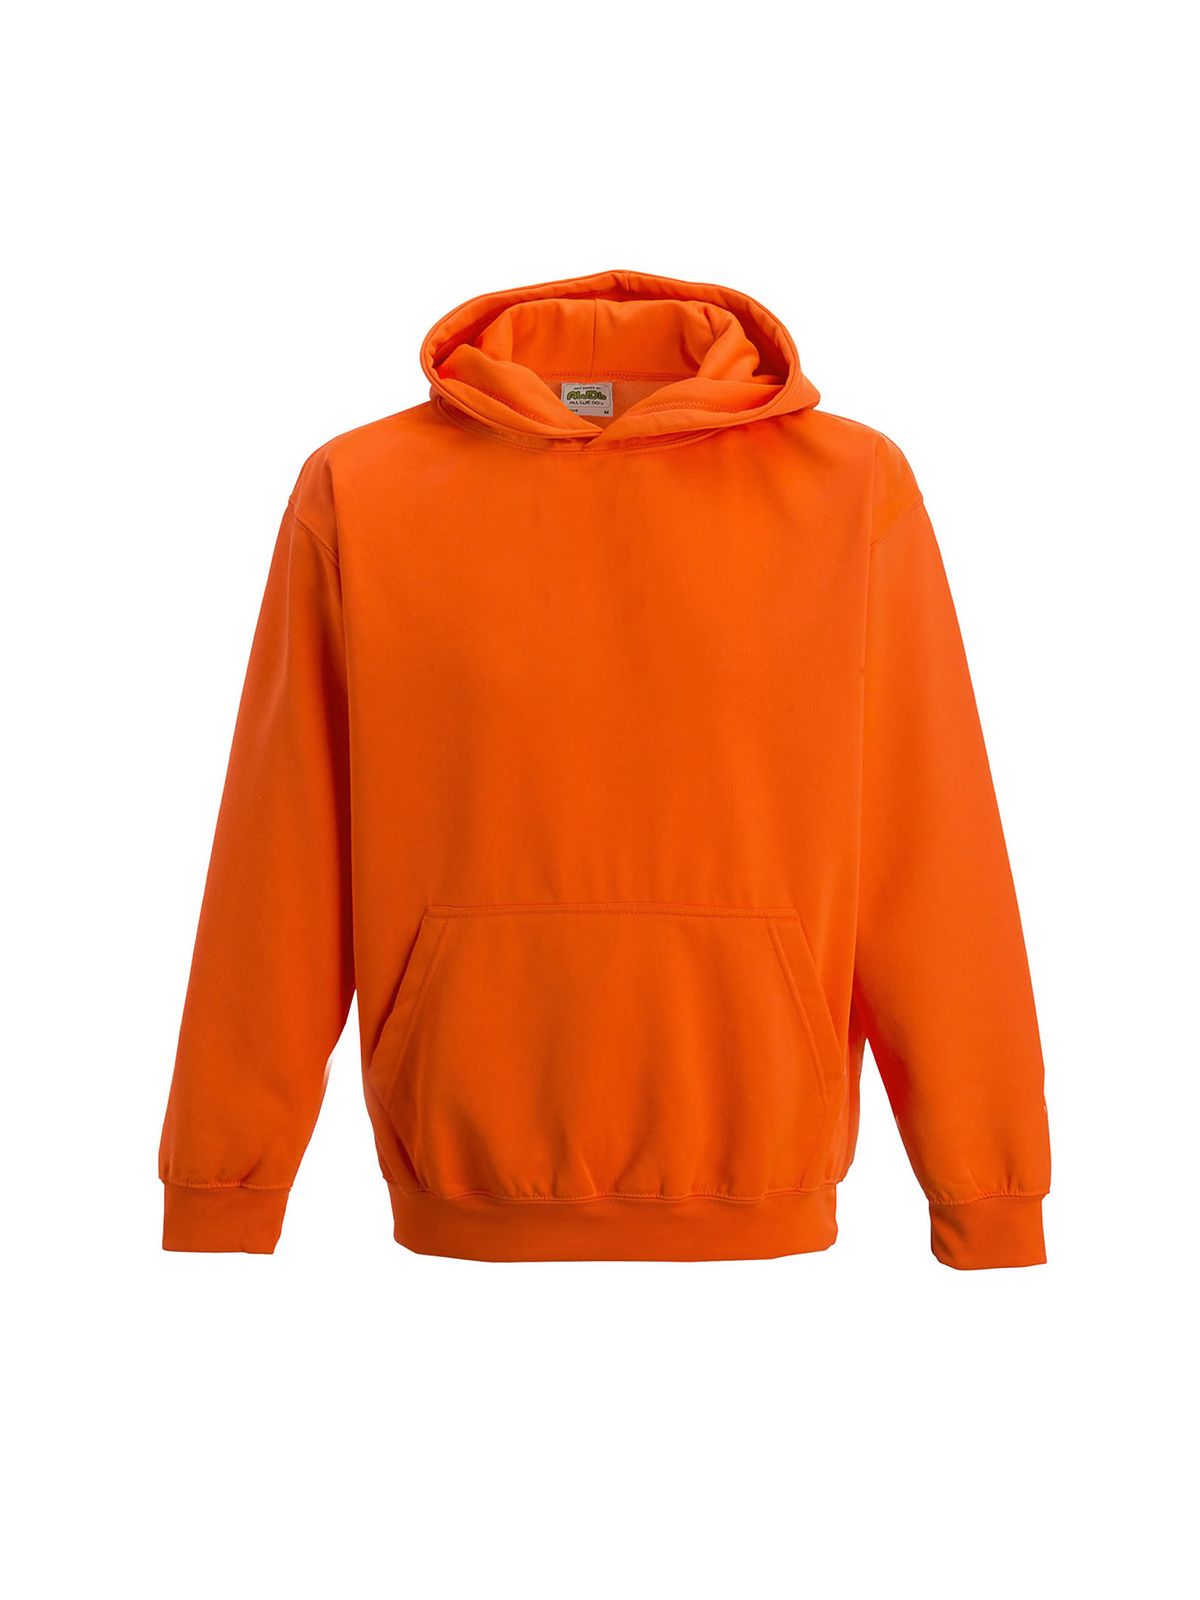 kids-electric-hoodie-electric-orange.webp